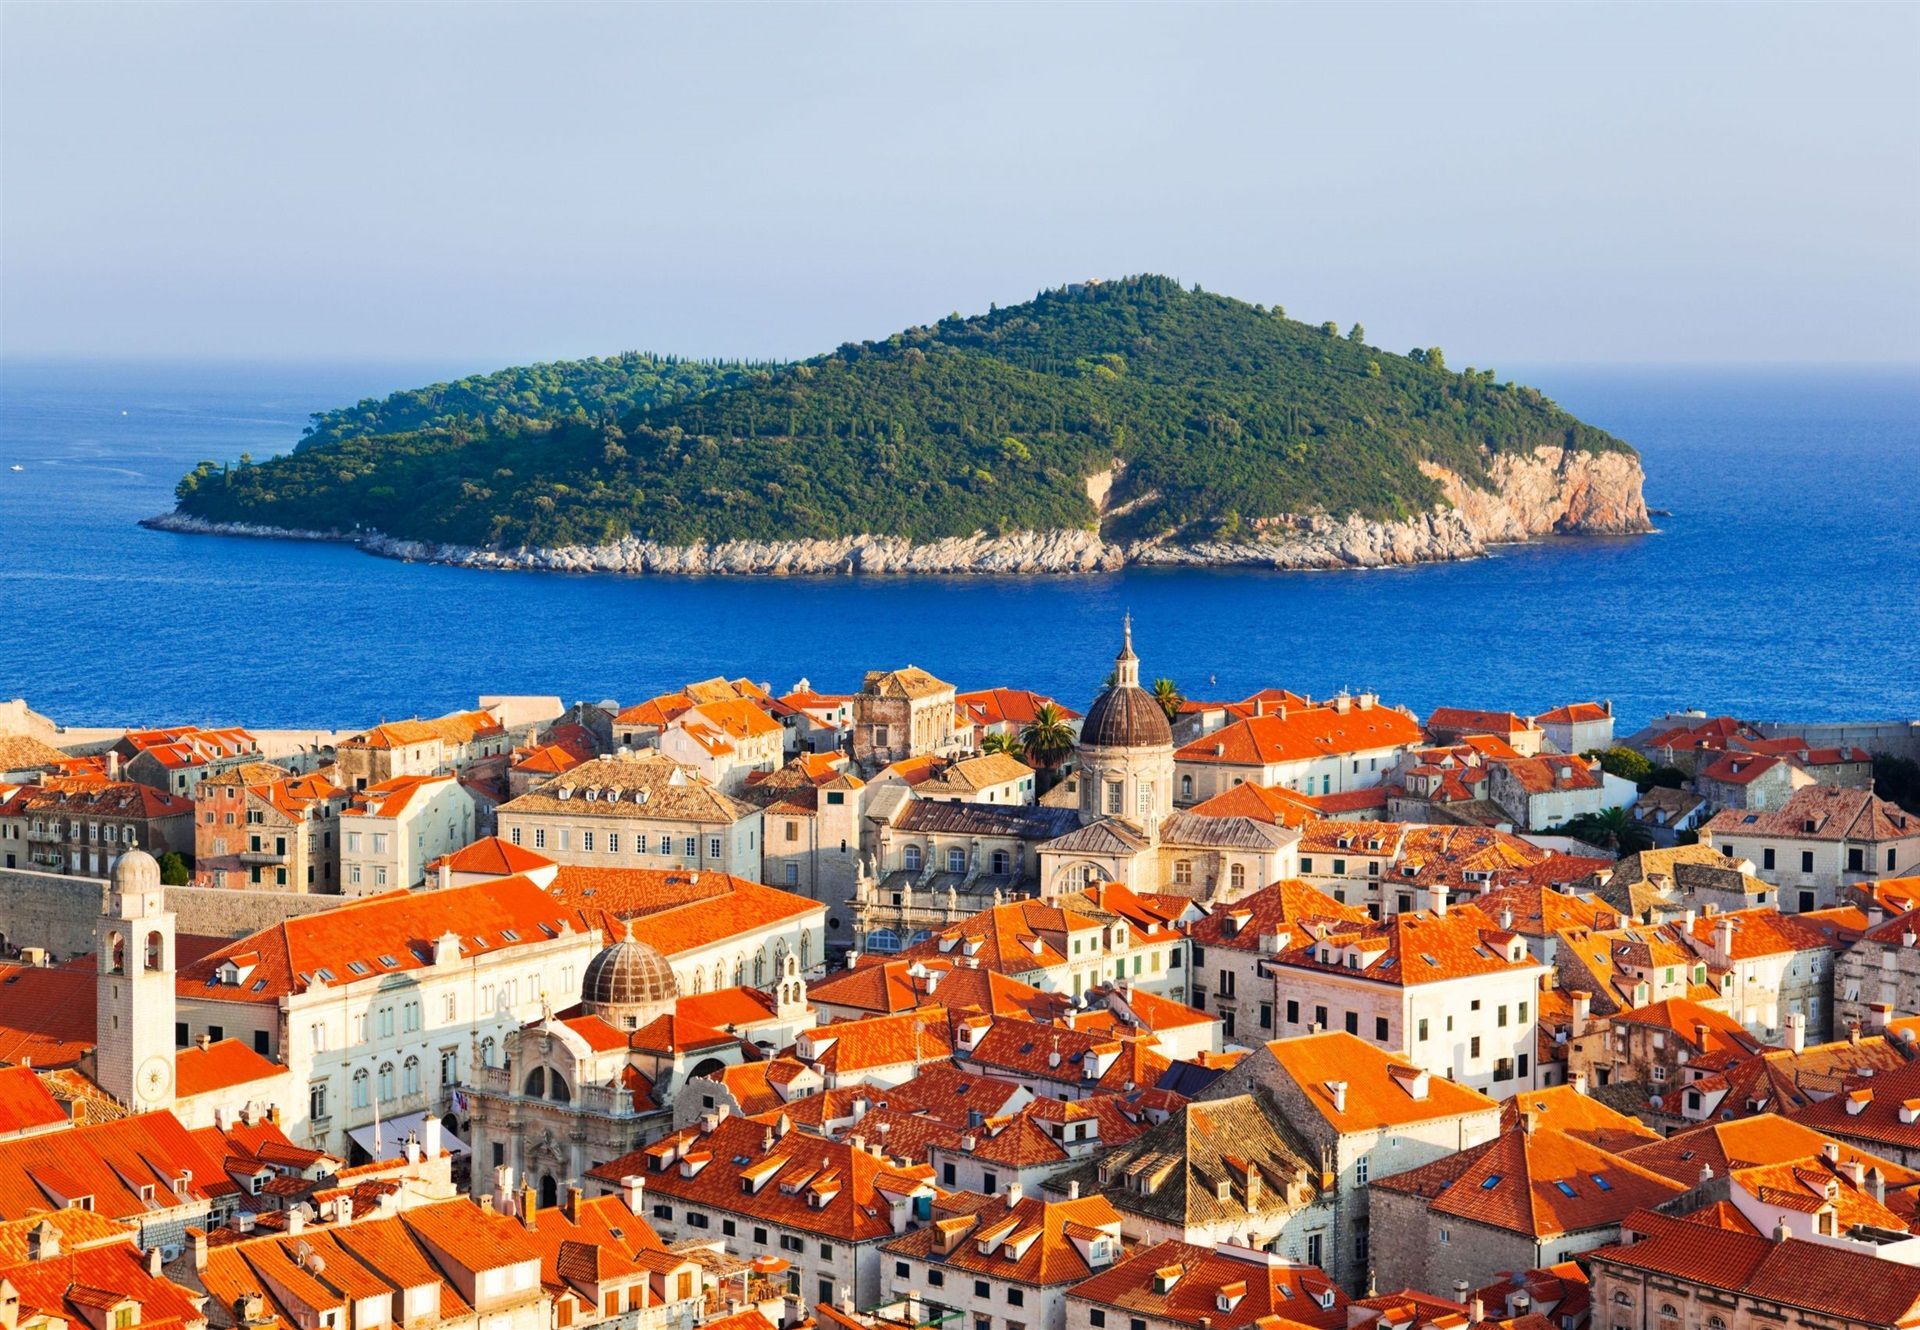 Dubrovnik Backgrounds on Wallpapers Vista